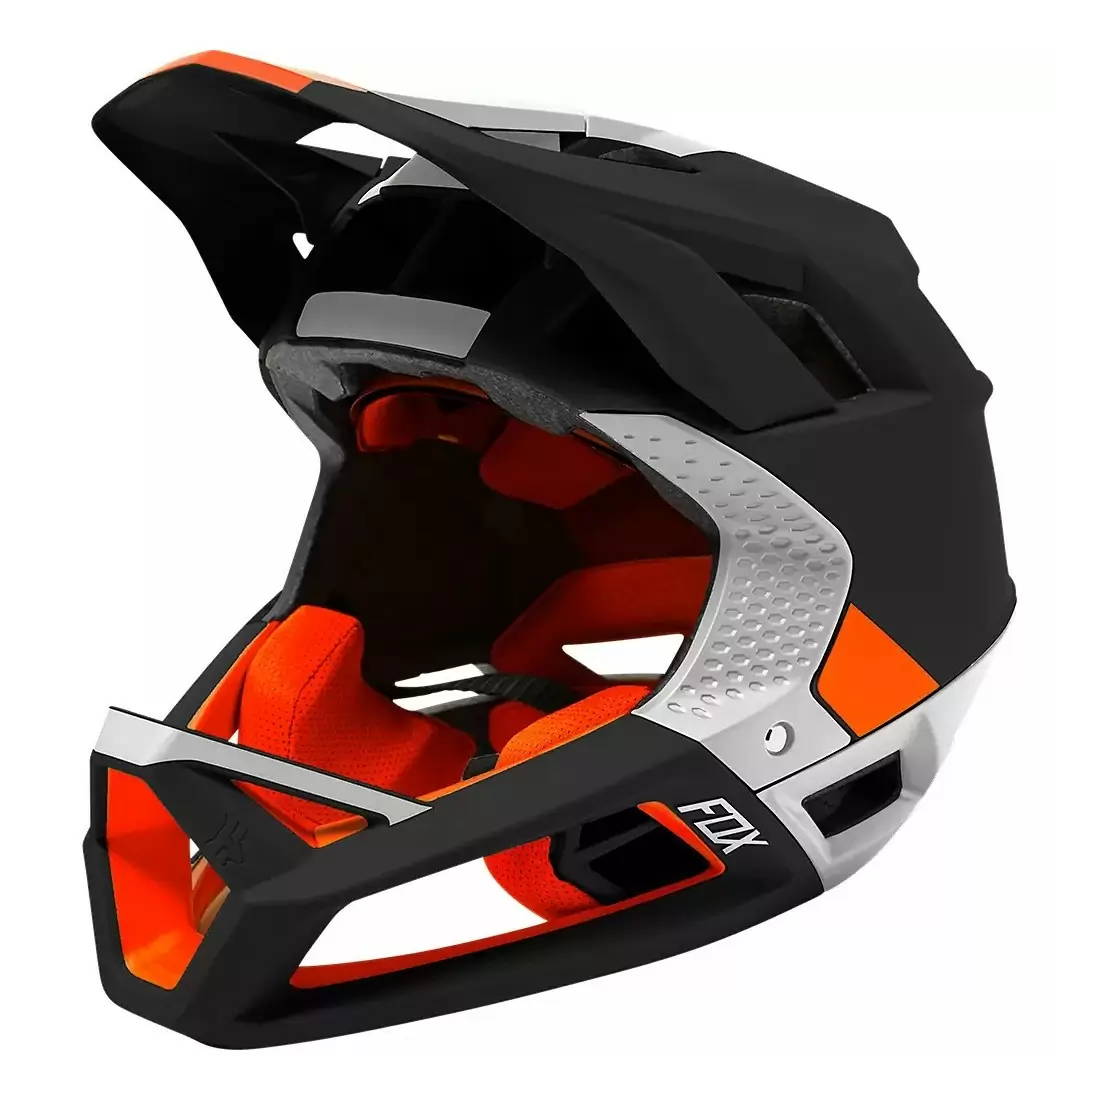 Proframe MTB Fullface Helmet Blocked Black/White Size S (52-56cm) - image